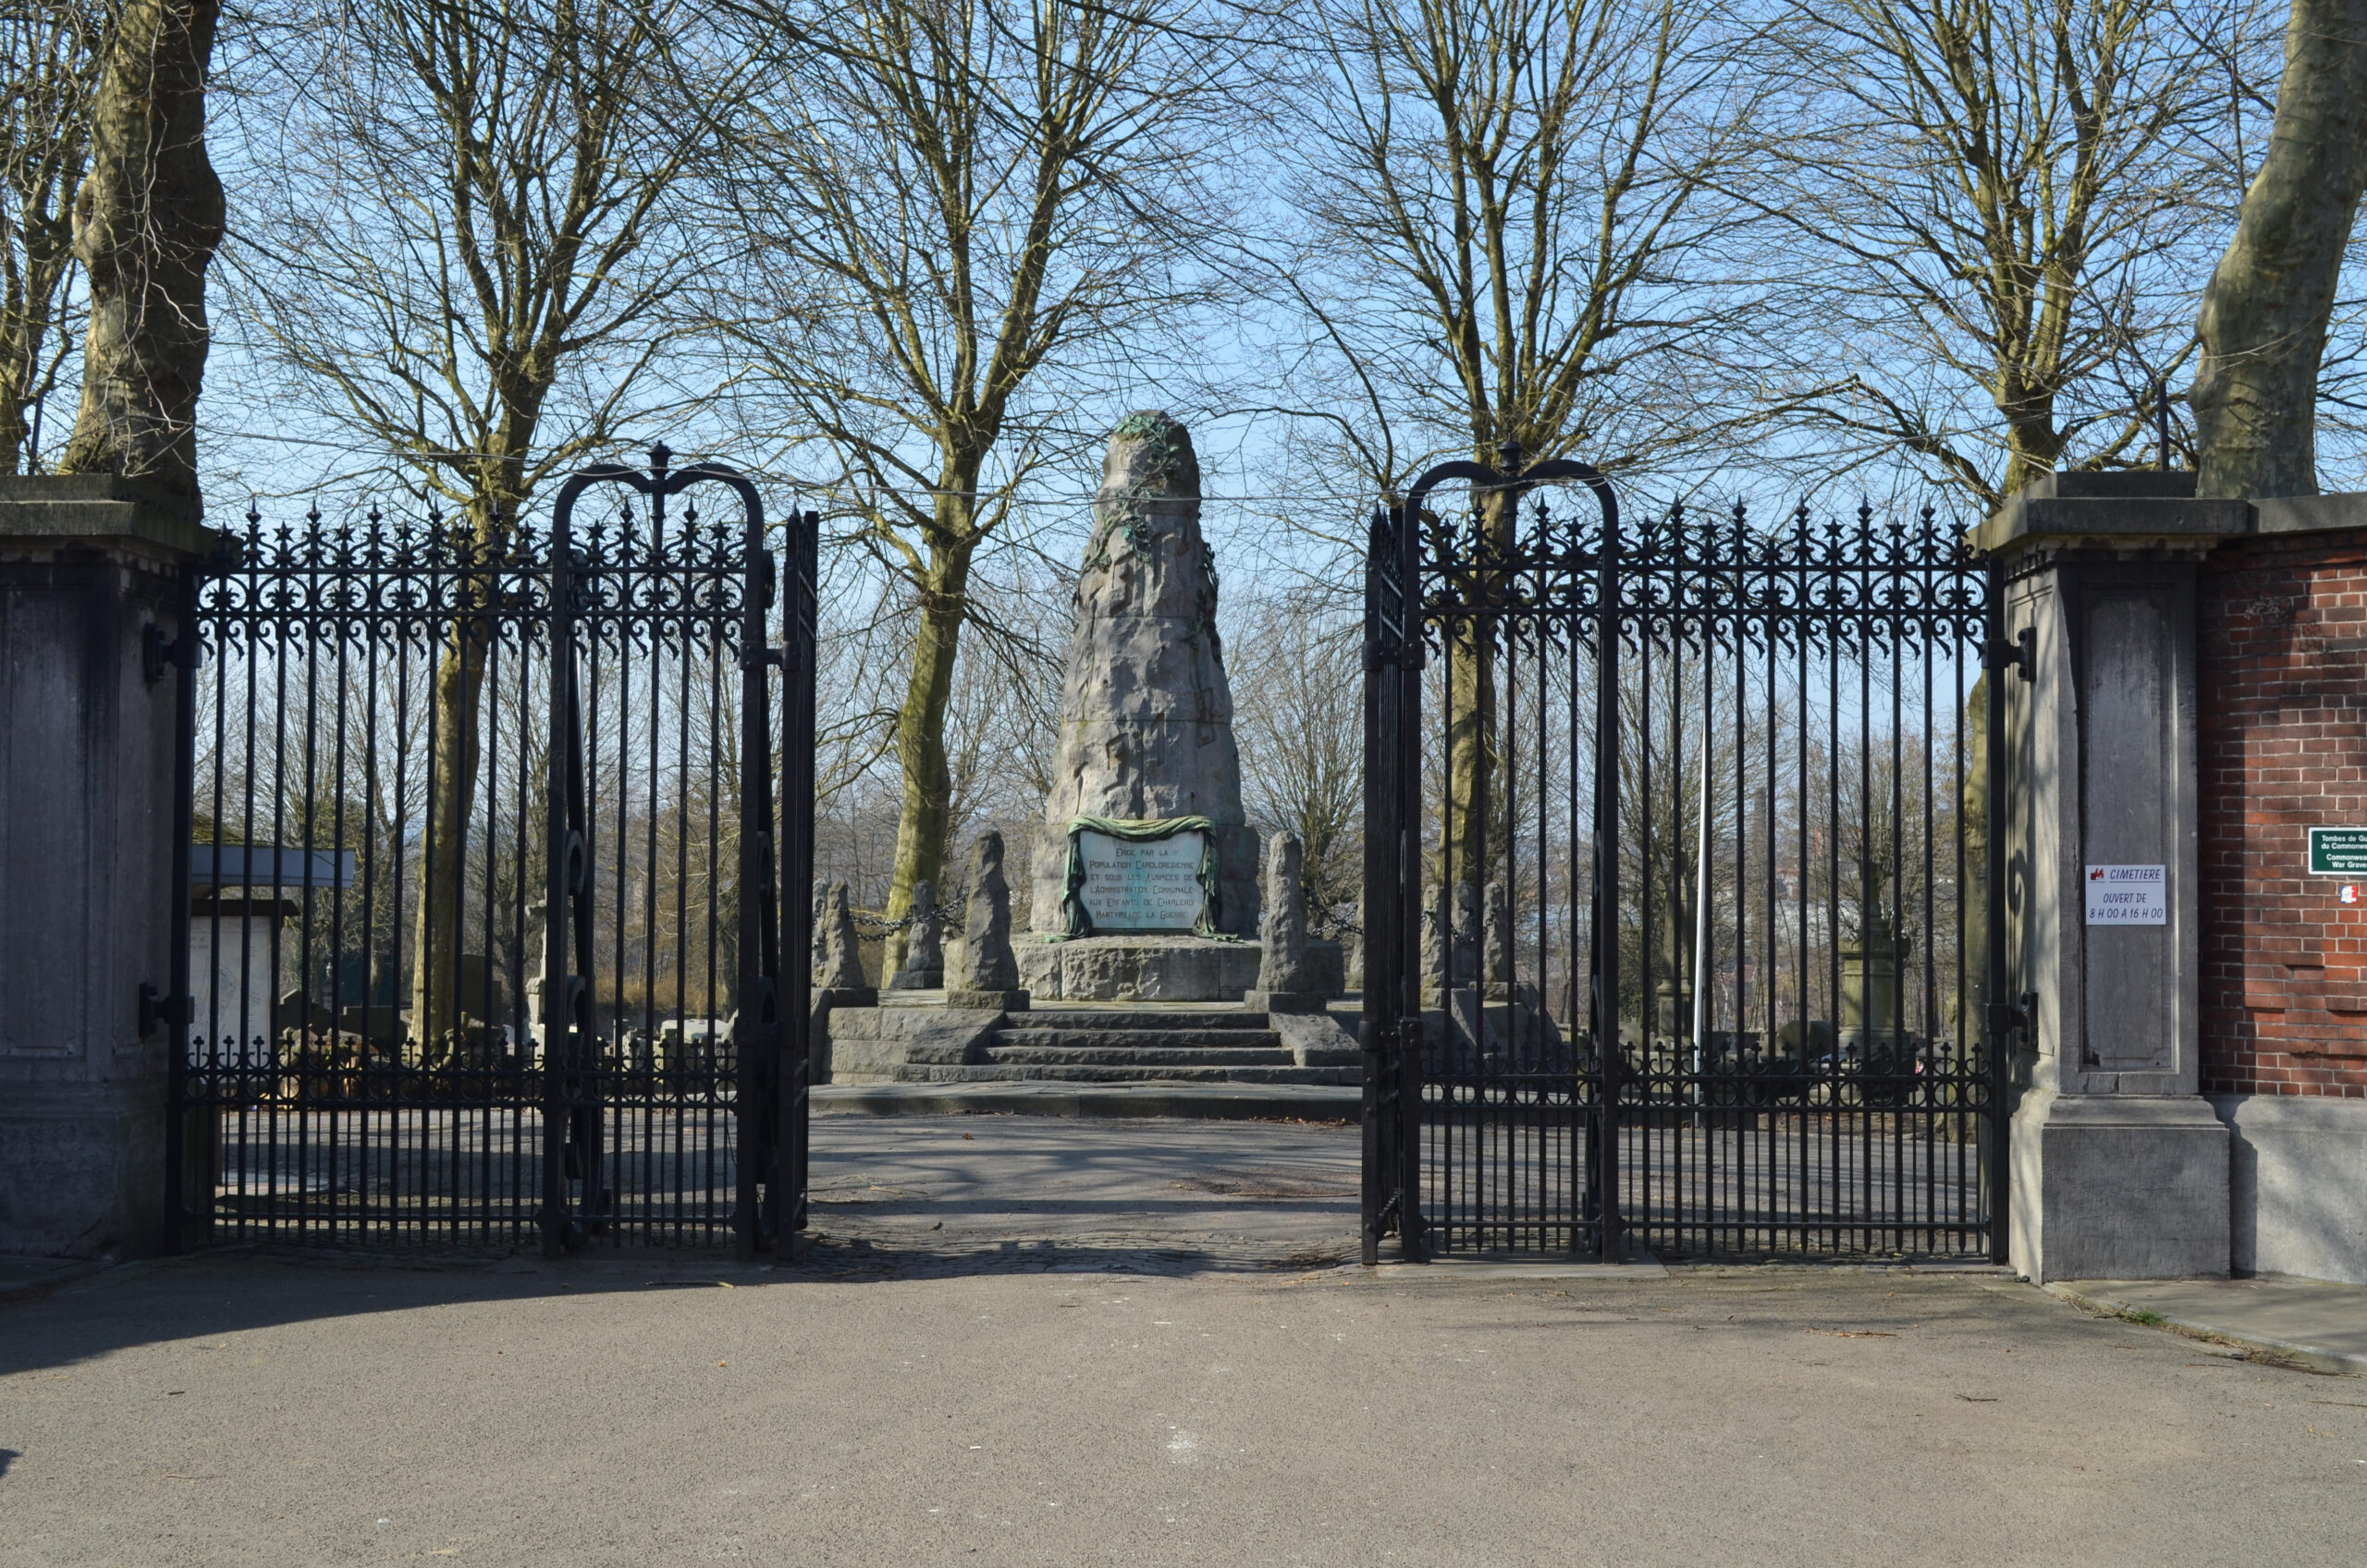 Βέλγιο: Bεβήλωση 85 τάφων στο εβραϊκό τμήμα νεκροταφείου του Σαρλερουά